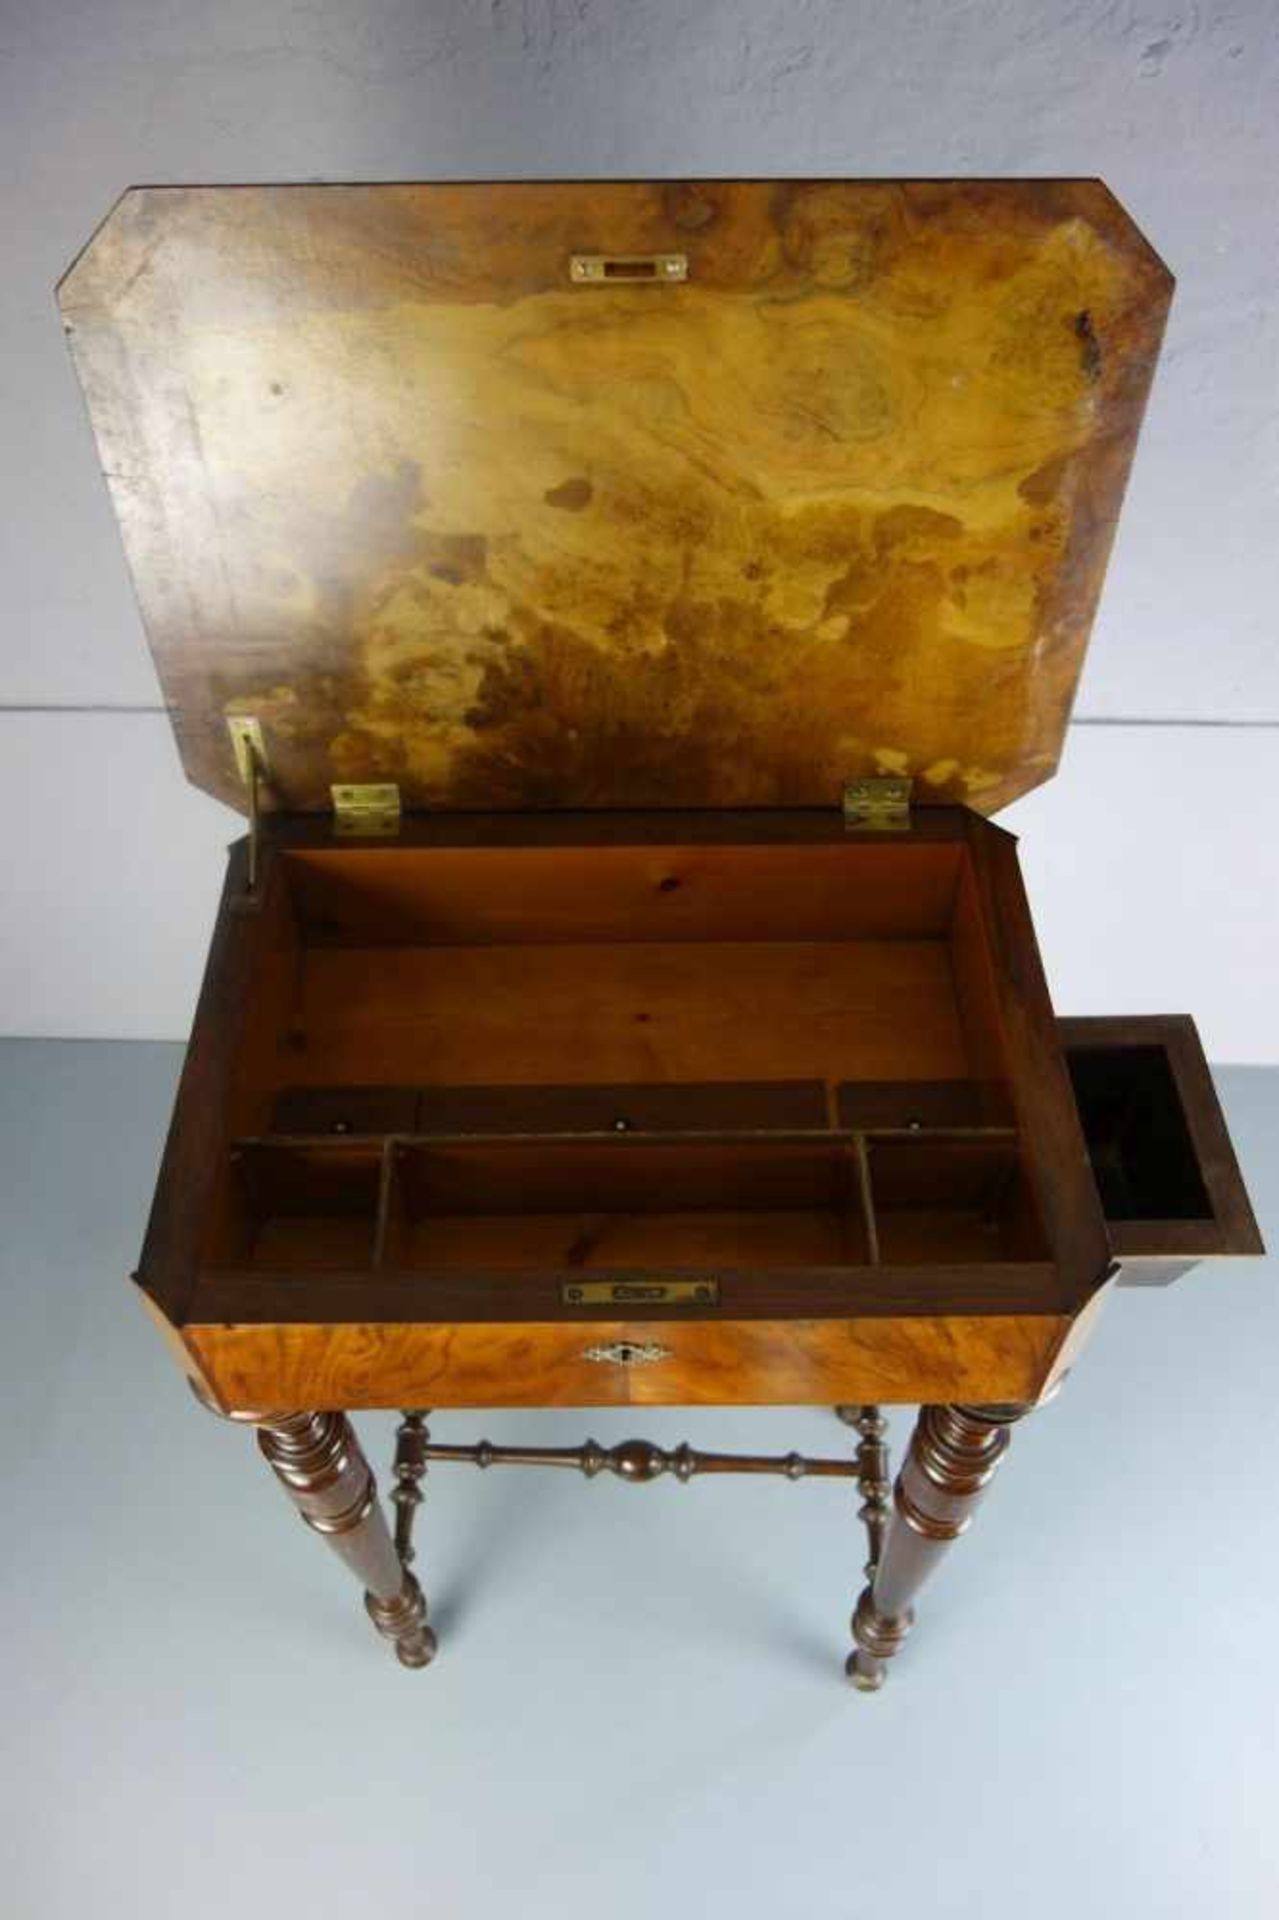 NÄHTISCH / sewing table, um 1900. Dunkel lasierte Buche, Nussbaumfurnier und ebonisierte Partien. - Image 3 of 4